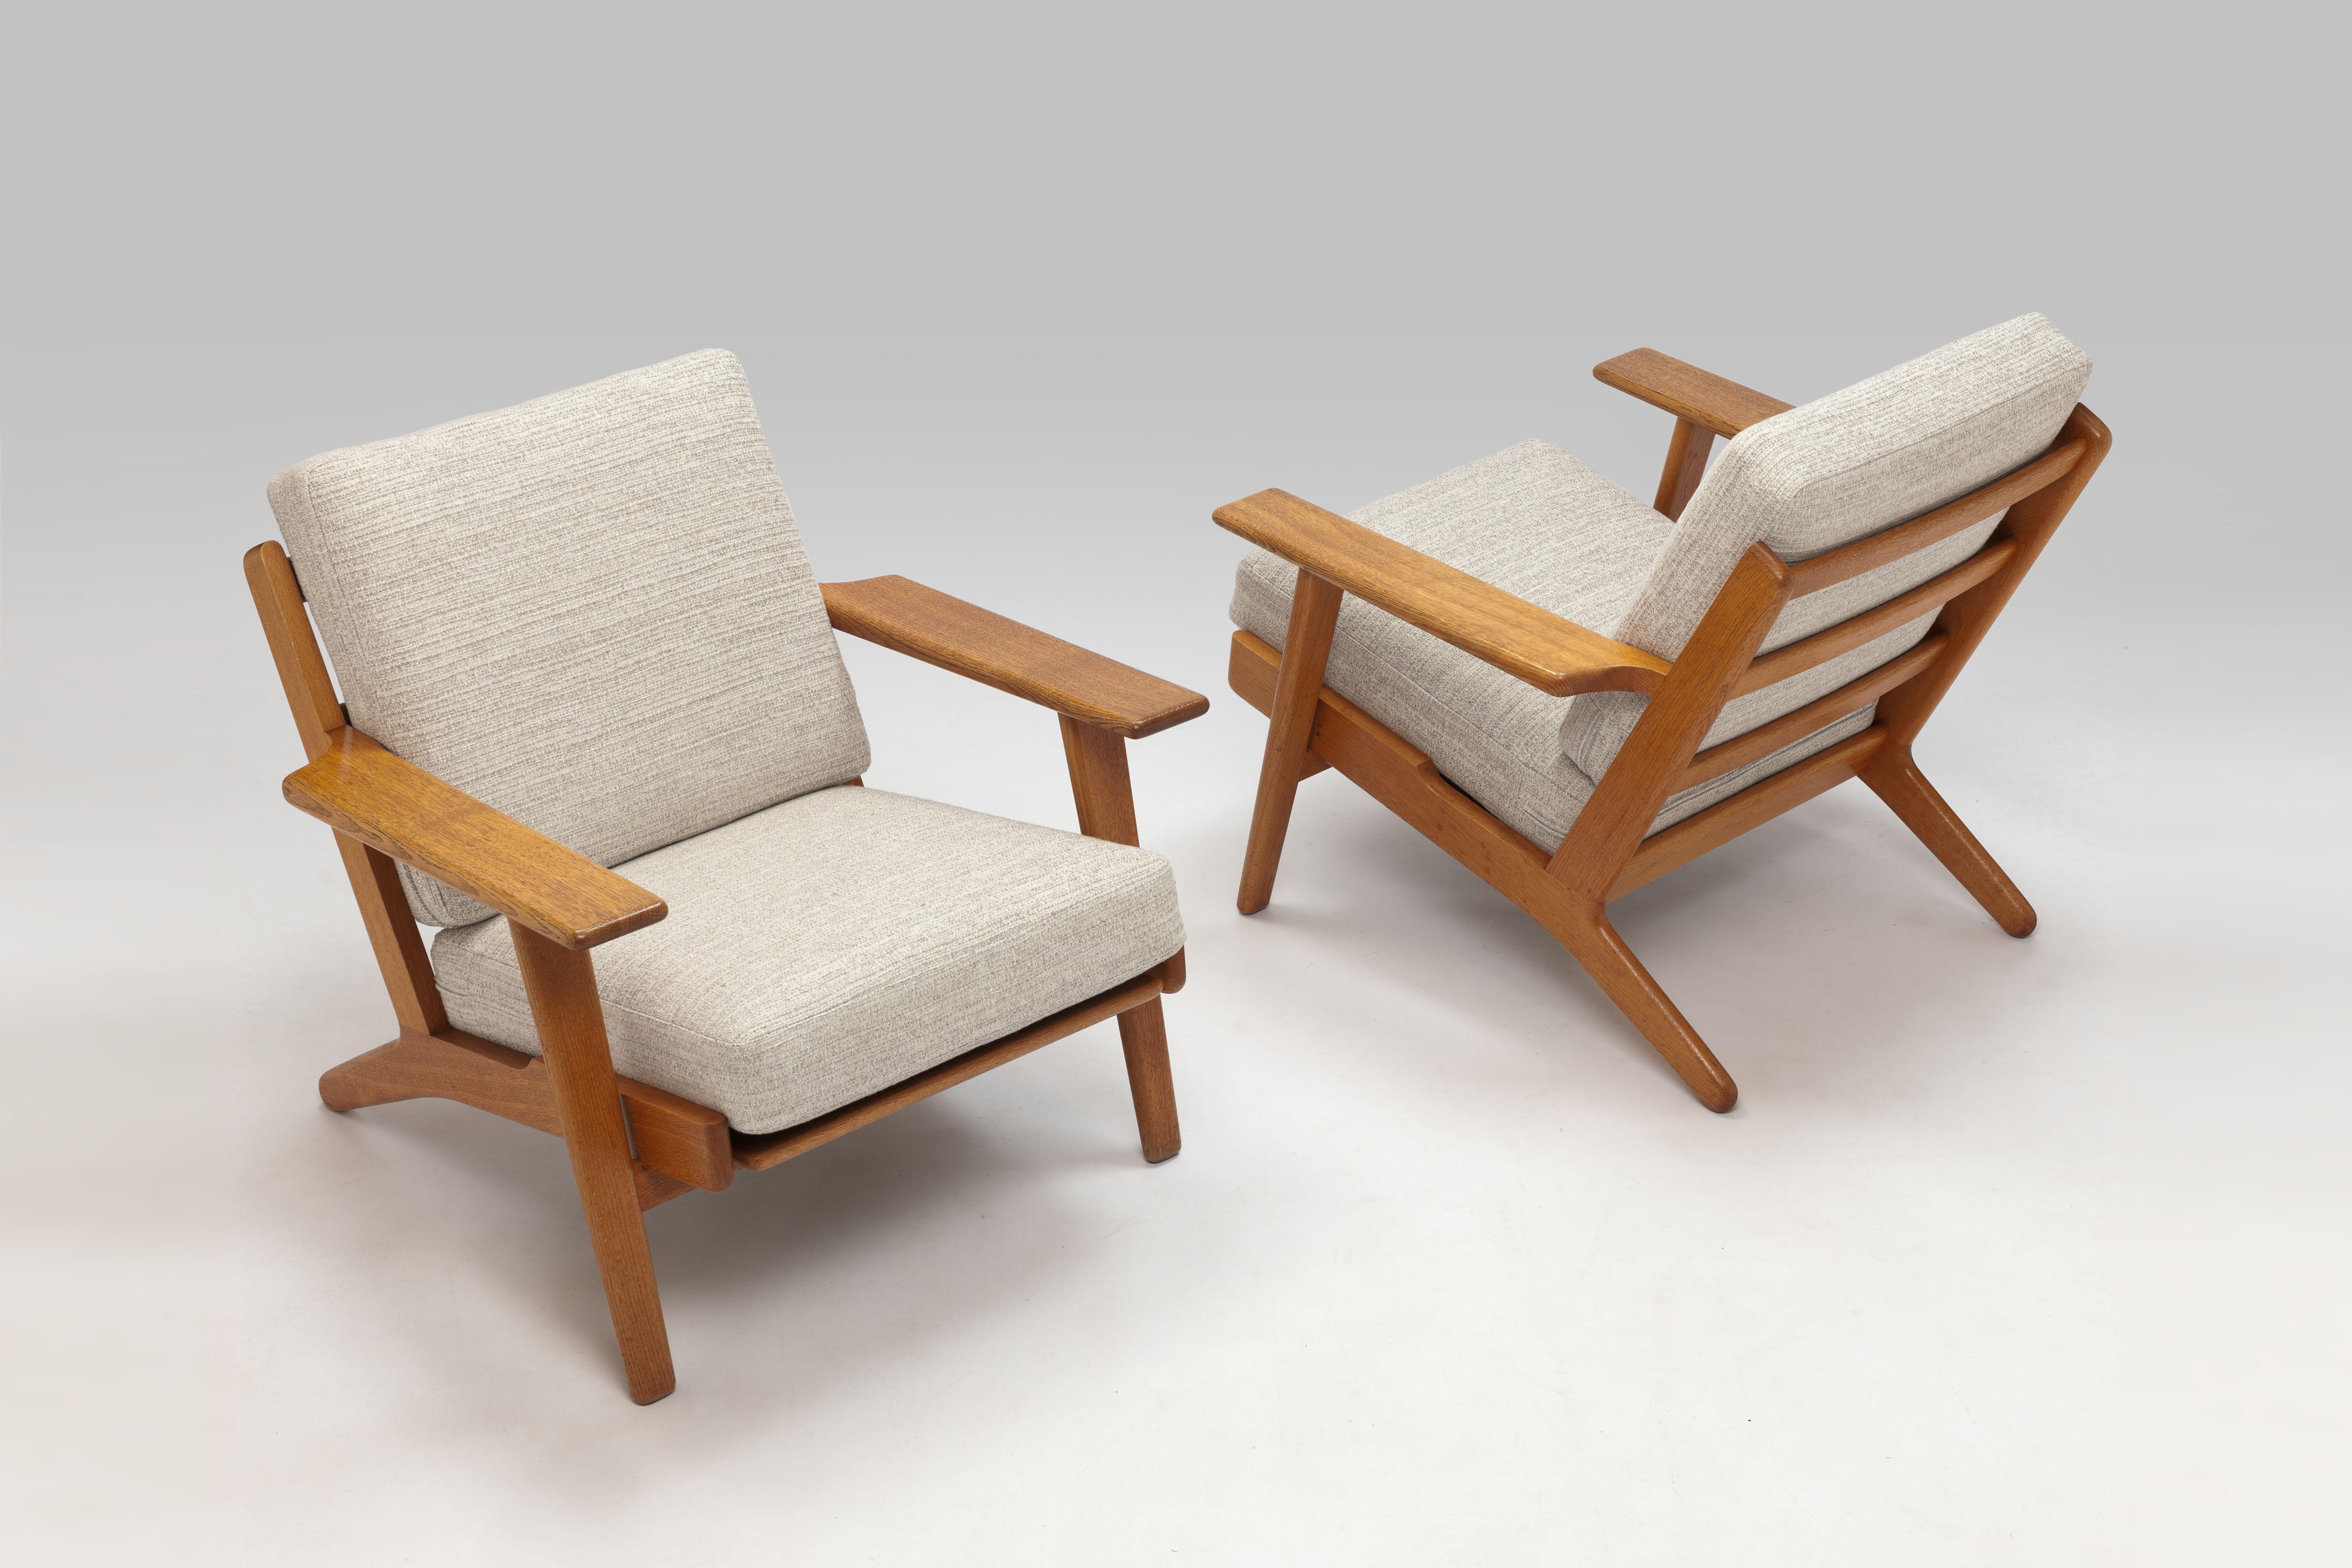 Hans Wegner Oak Lounge Chair GE290 by GETAMA '1 of 3 Chairs' 8